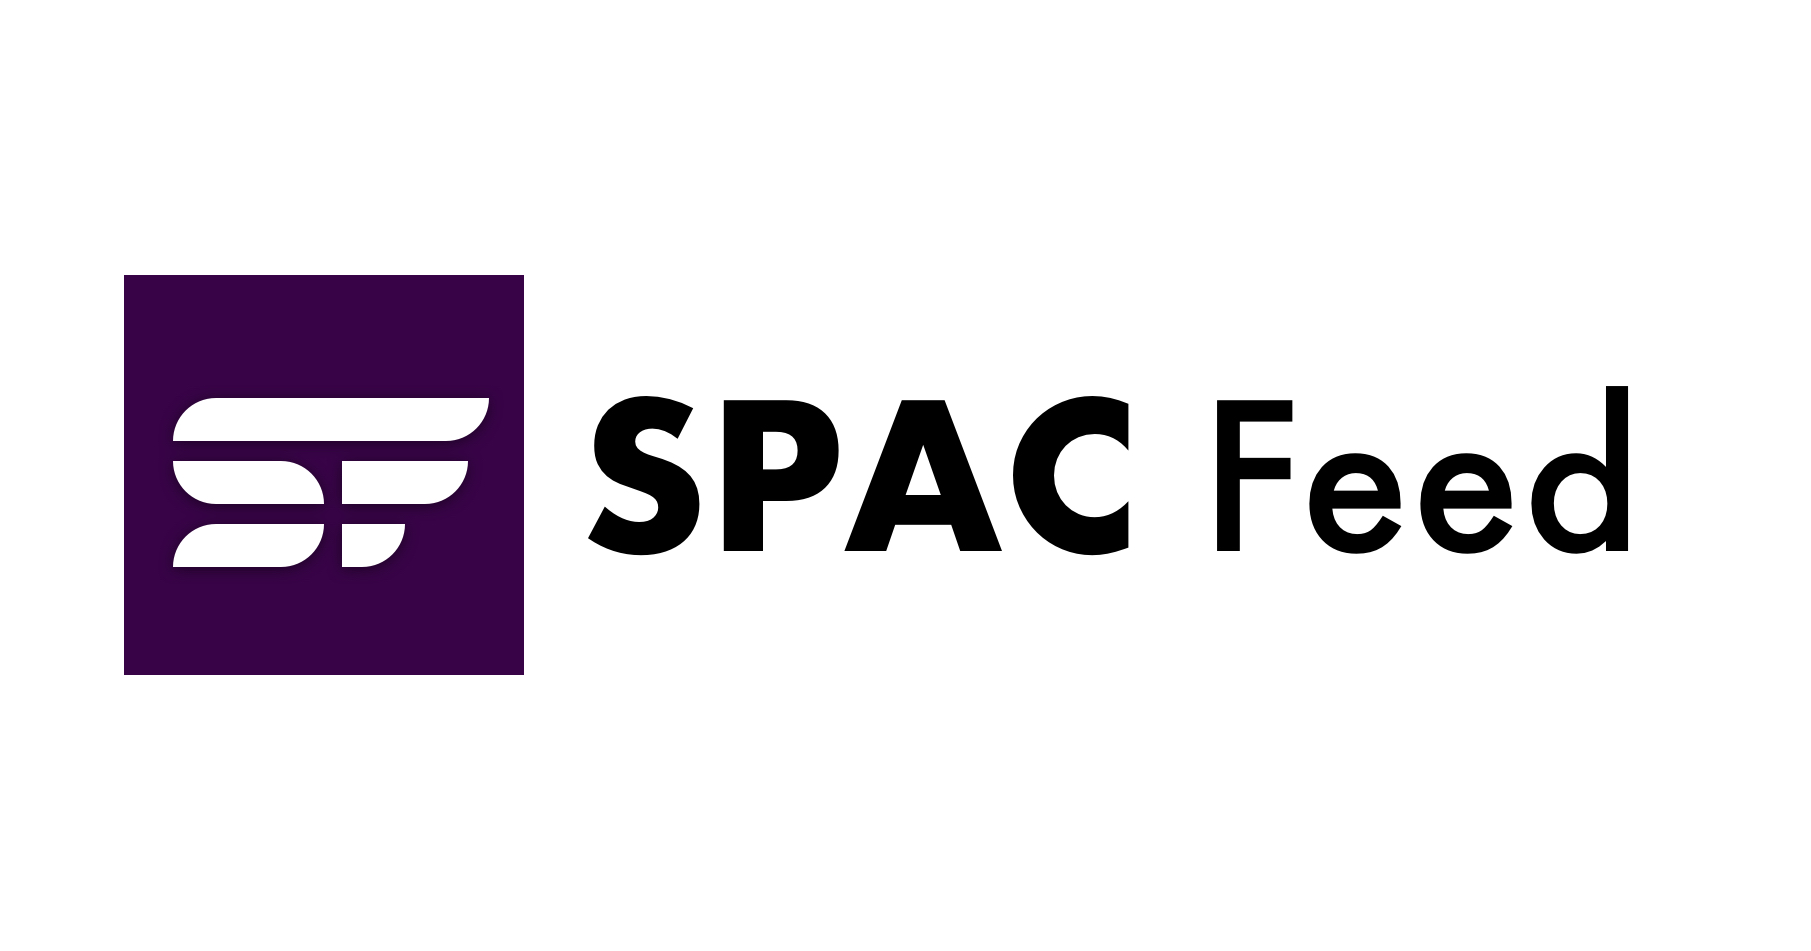 Verslag van de open vergadering: SEC keurt de definitieve regels van de SPAC goed in 3-2 stemming | SPAC-feed